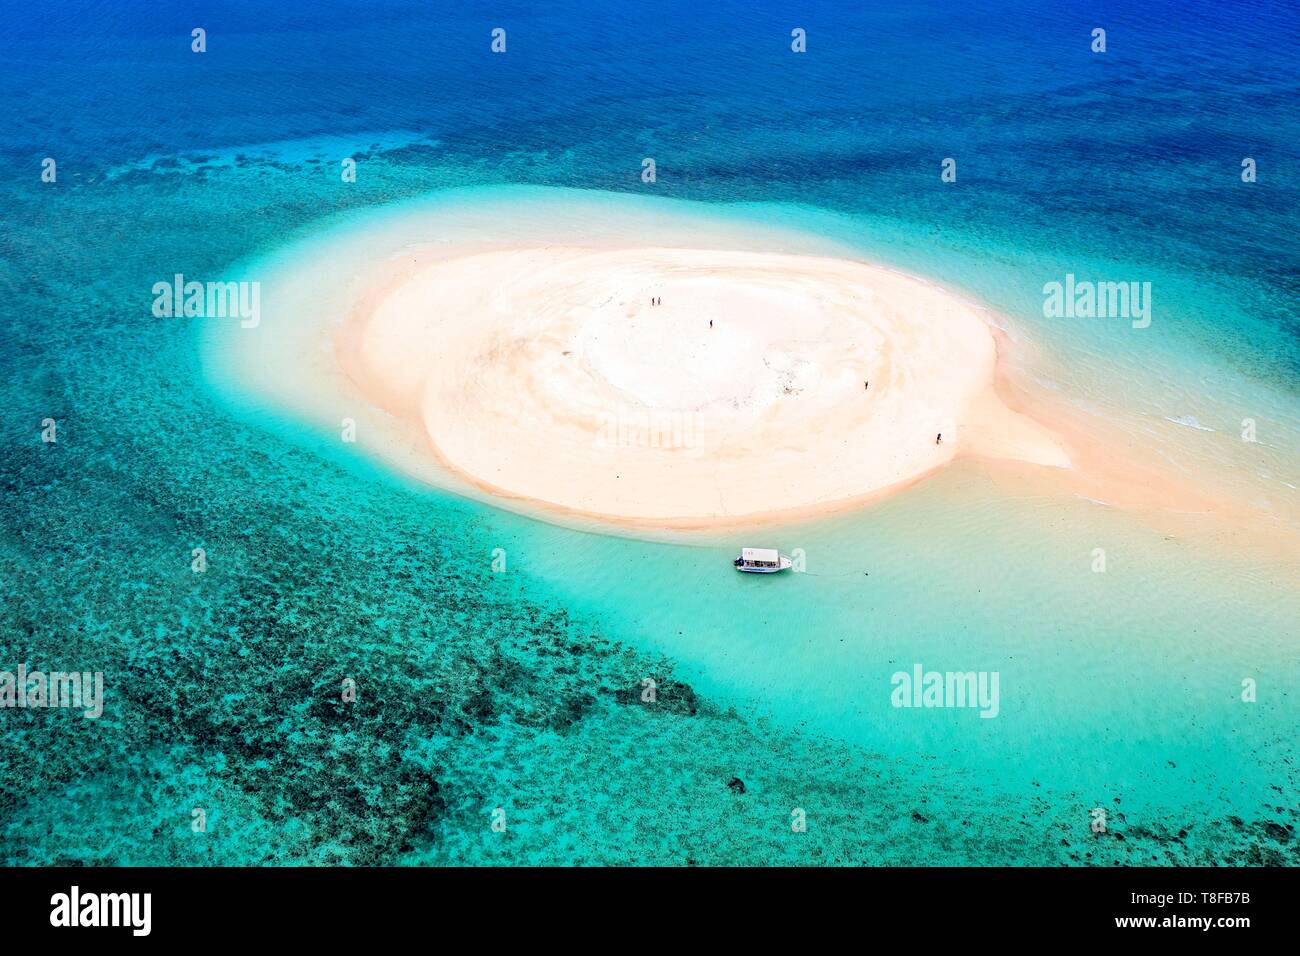 La France, l'île de Mayotte (département français d'outre-mer), la Grande Terre, M'Tsamoudou, îlot de sable blanc sur la barrière de corail dans le lagon face à Saziley Point (vue aérienne) Banque D'Images